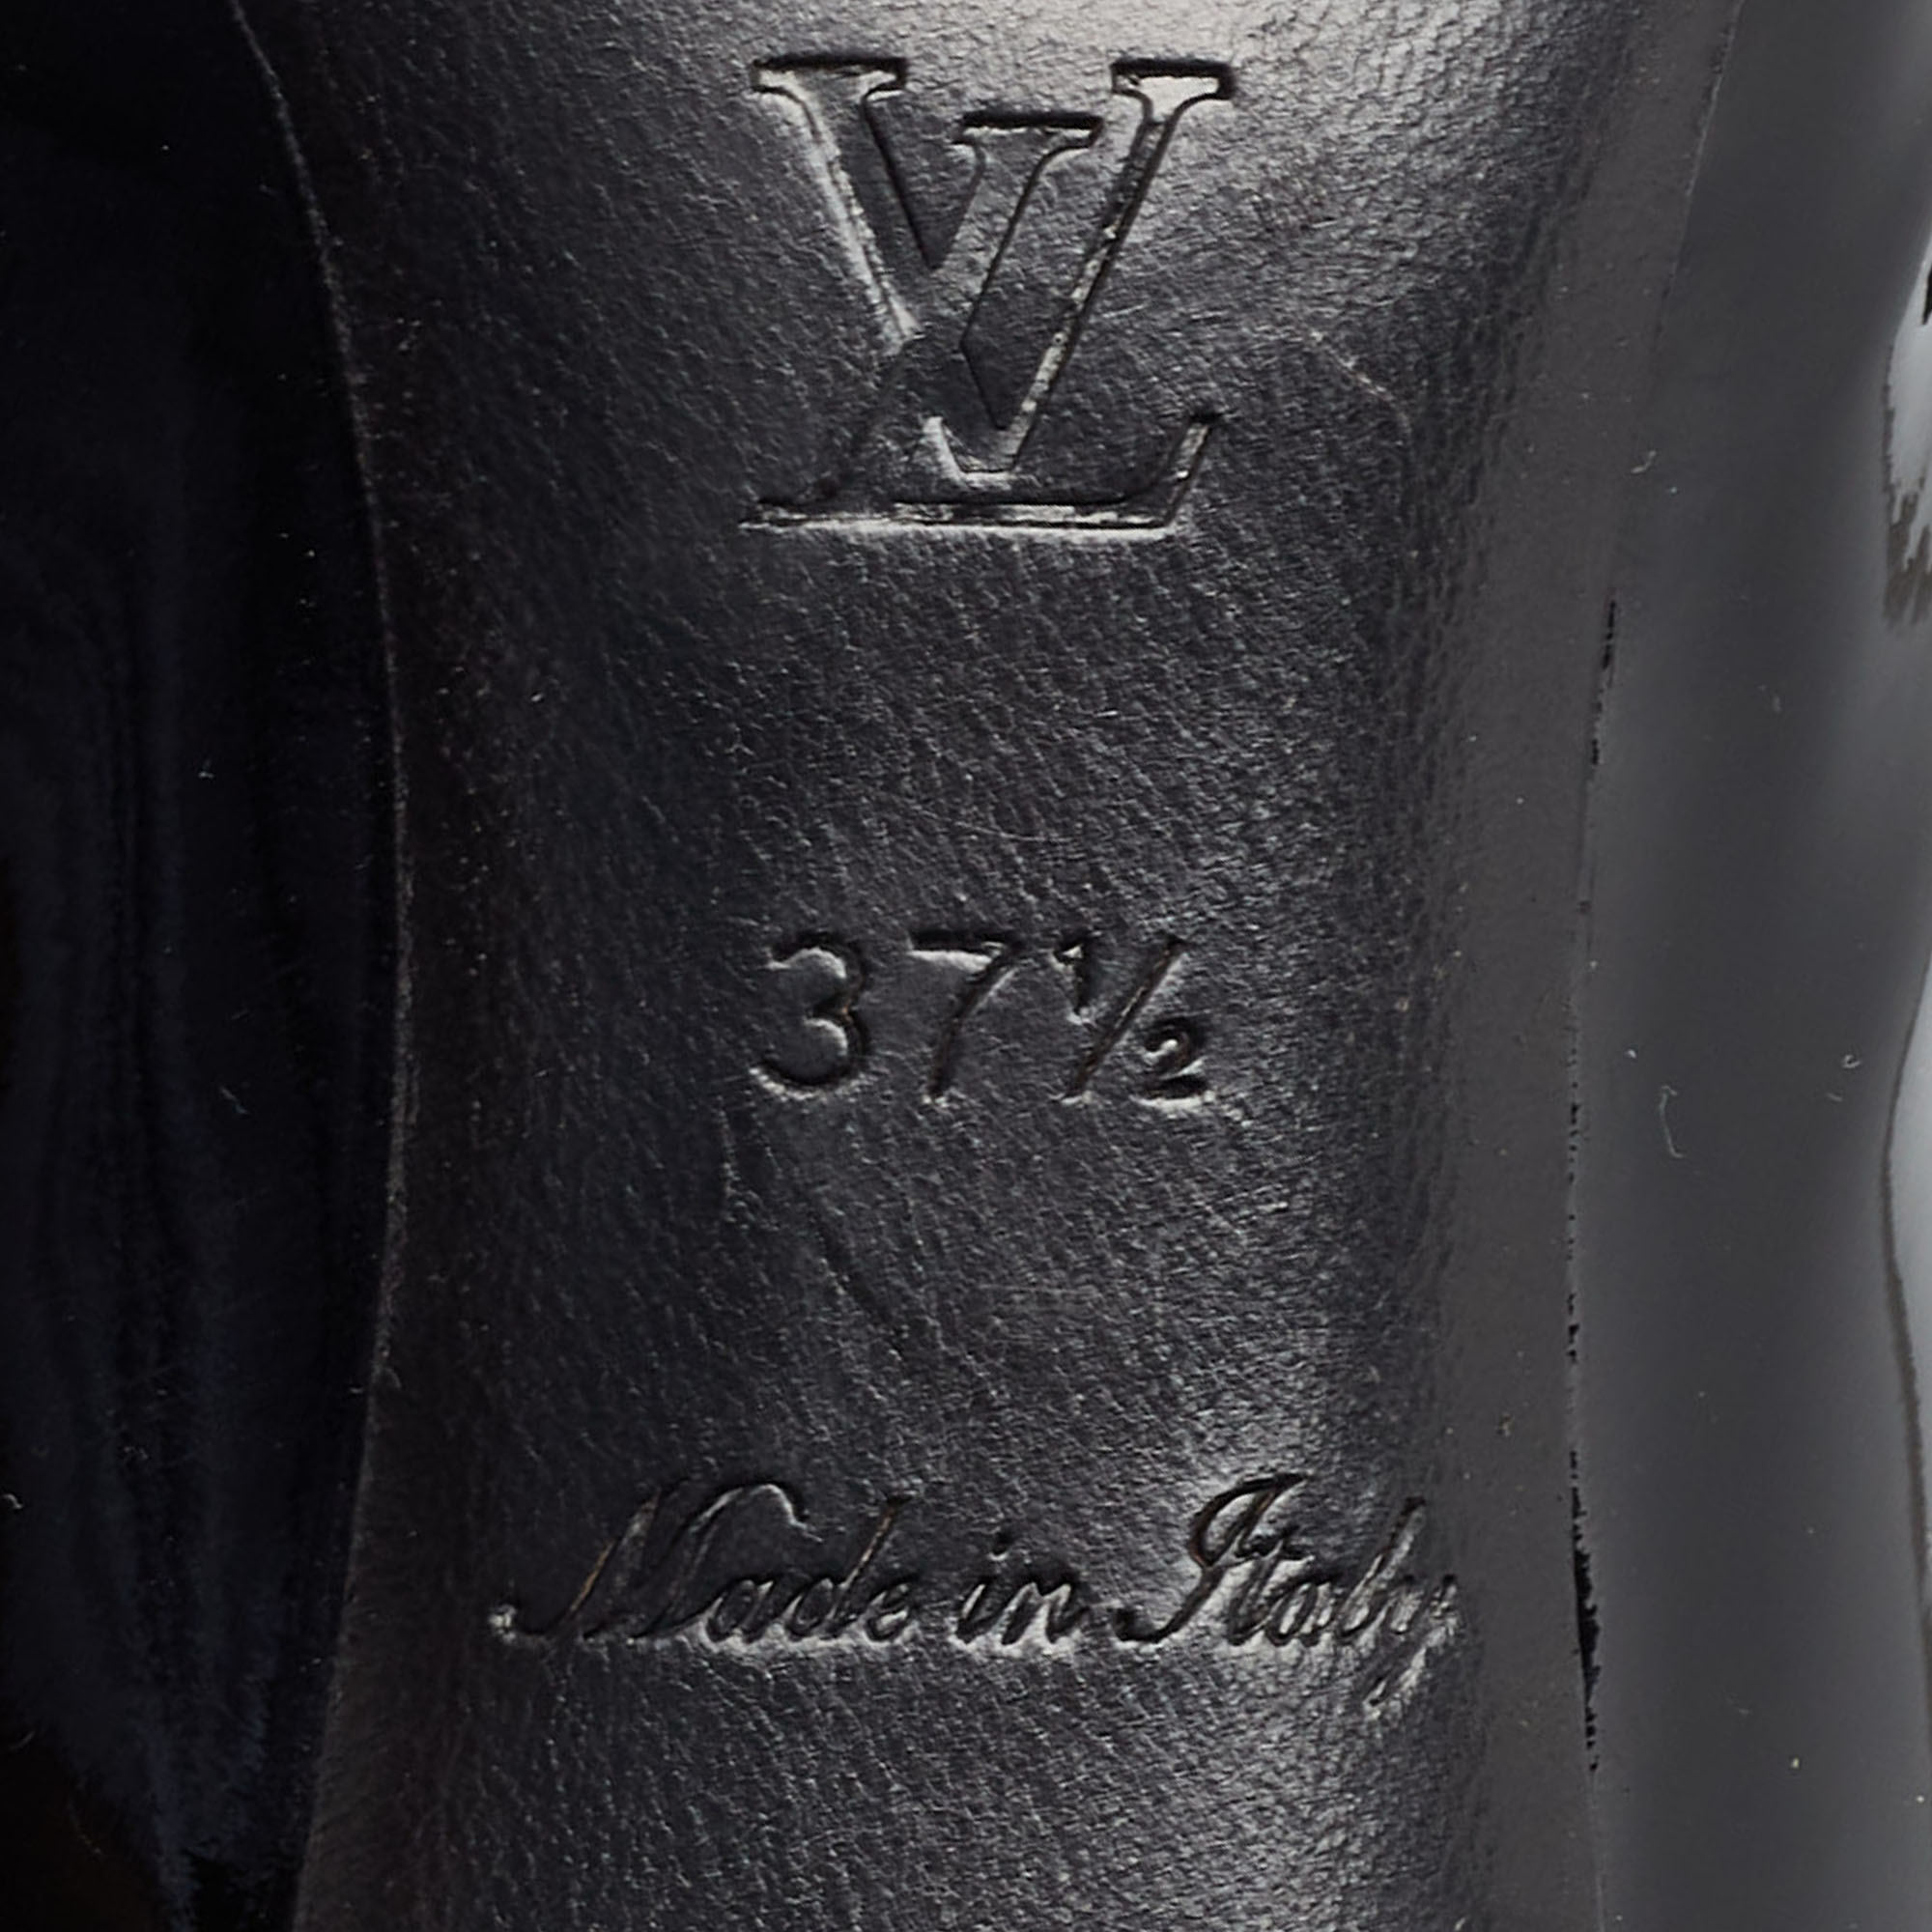 Louis Vuitton Black Patent Leather Studded Bernice Pumps Size 37.5